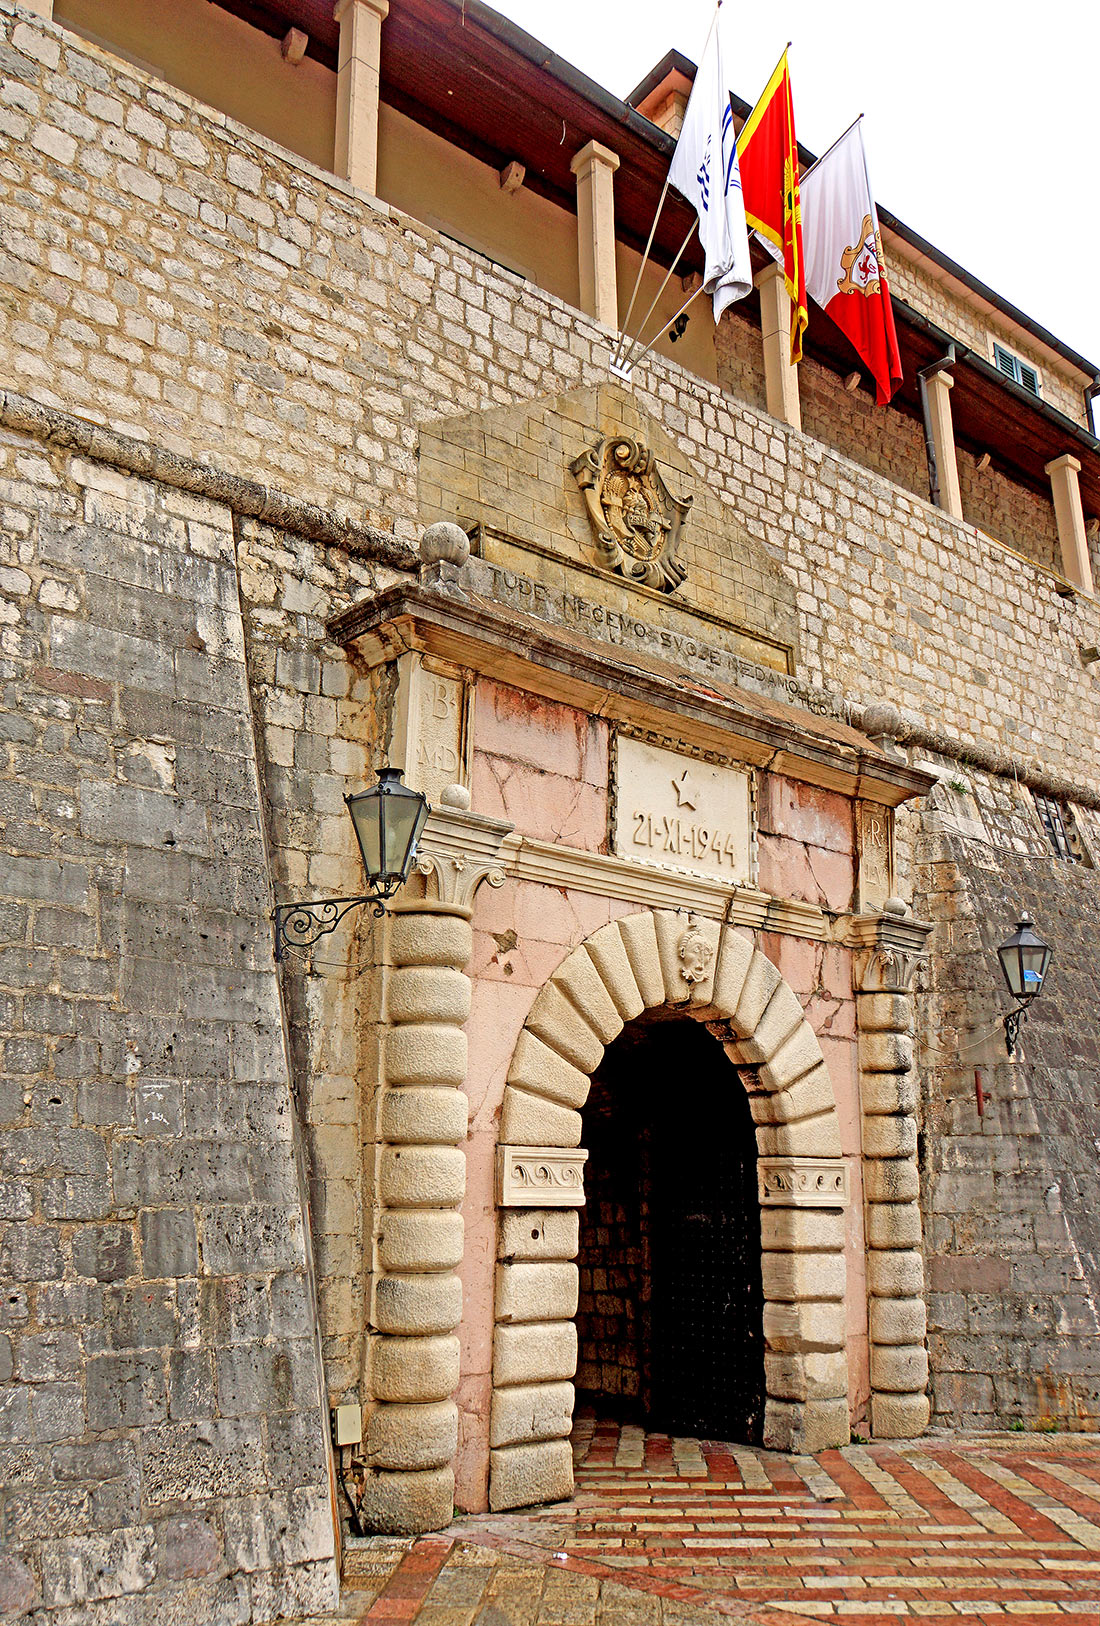 Sea Gate in Kotor